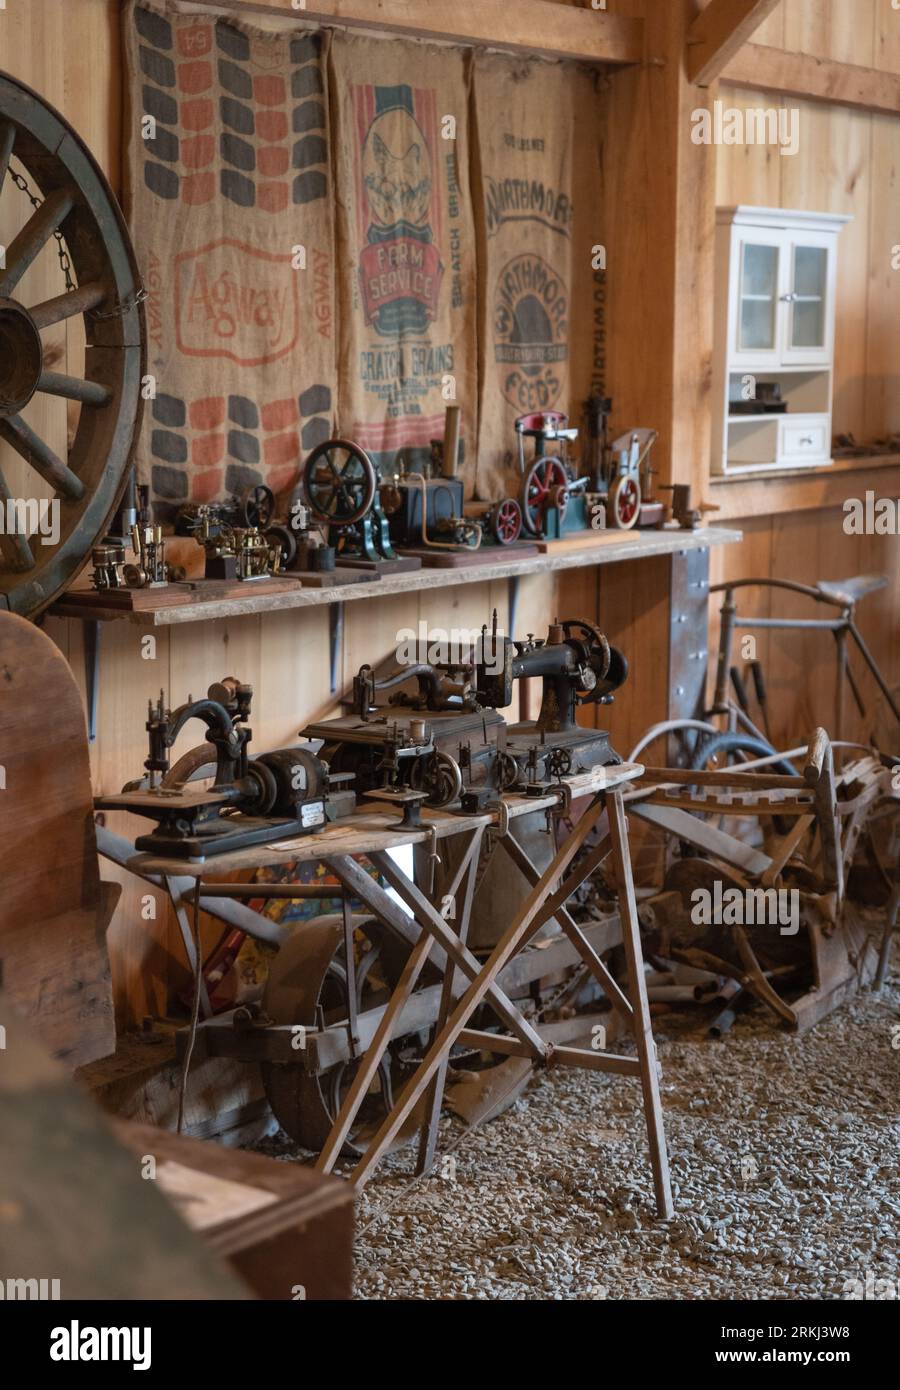 Verschiedene altmodische Nähmaschinen und Antiquitäten in einer rustikalen Holzscheune in Neuengland Stockfoto